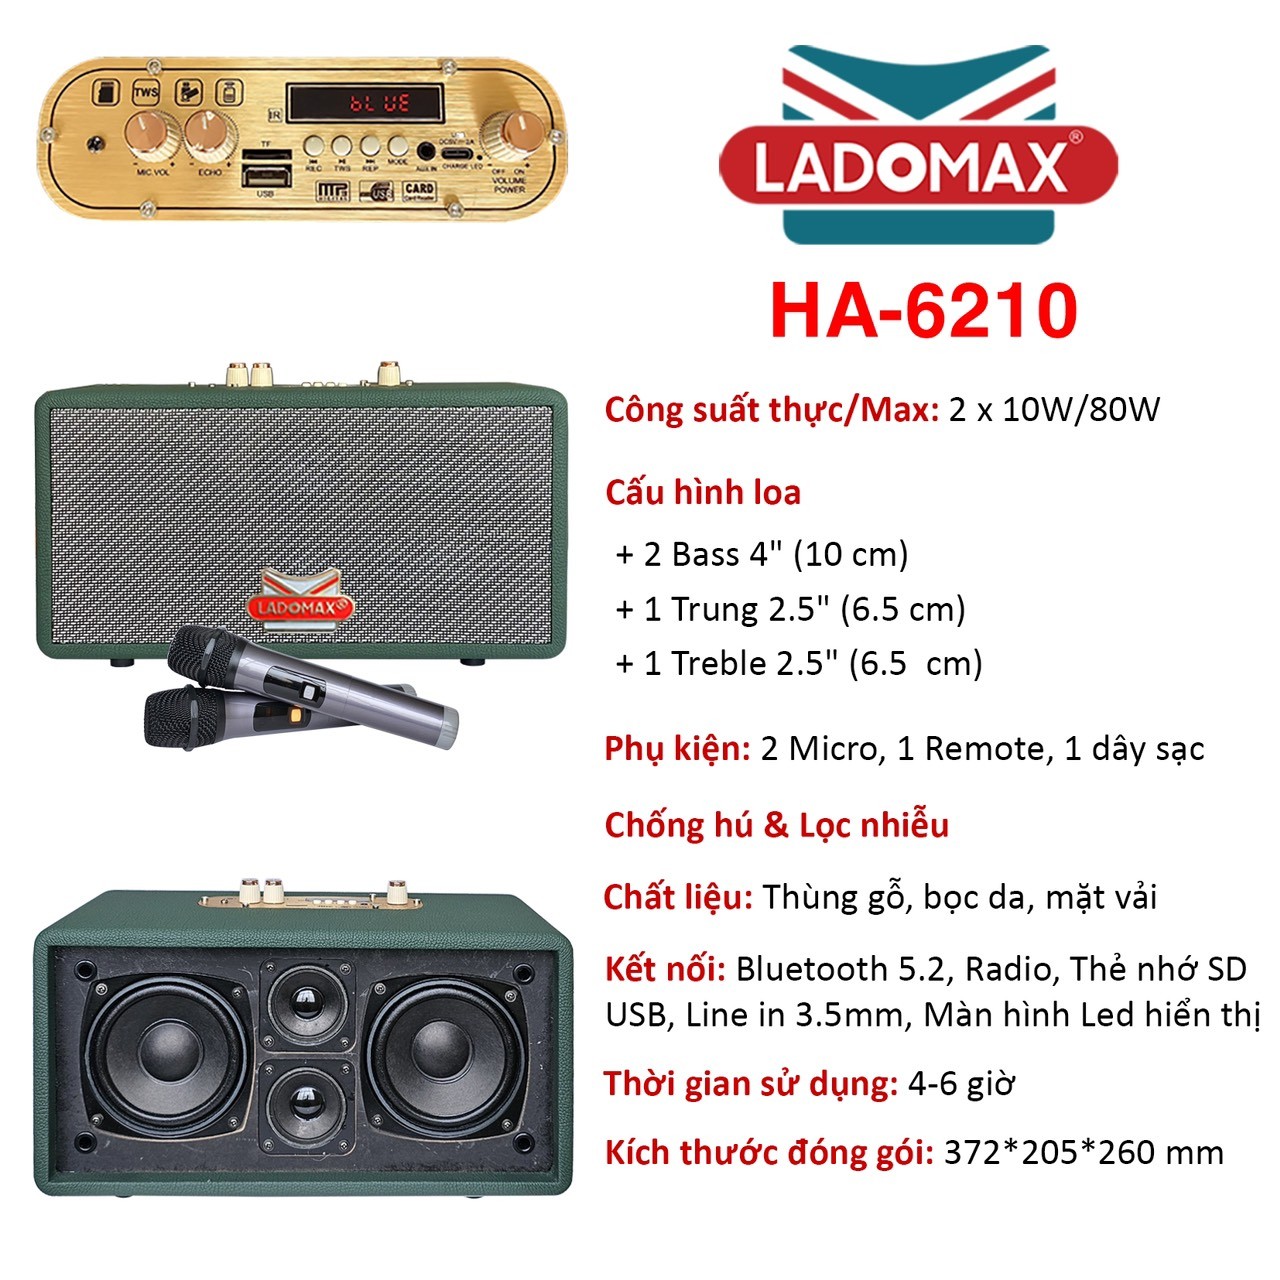 Loa xách tay hát Karaoke gia đình Ladomax HA-6210 có chức năng Chống hú & Lọc nhiễu, pin sử dụng 4 - 6 giờ - Hàng chính hãng